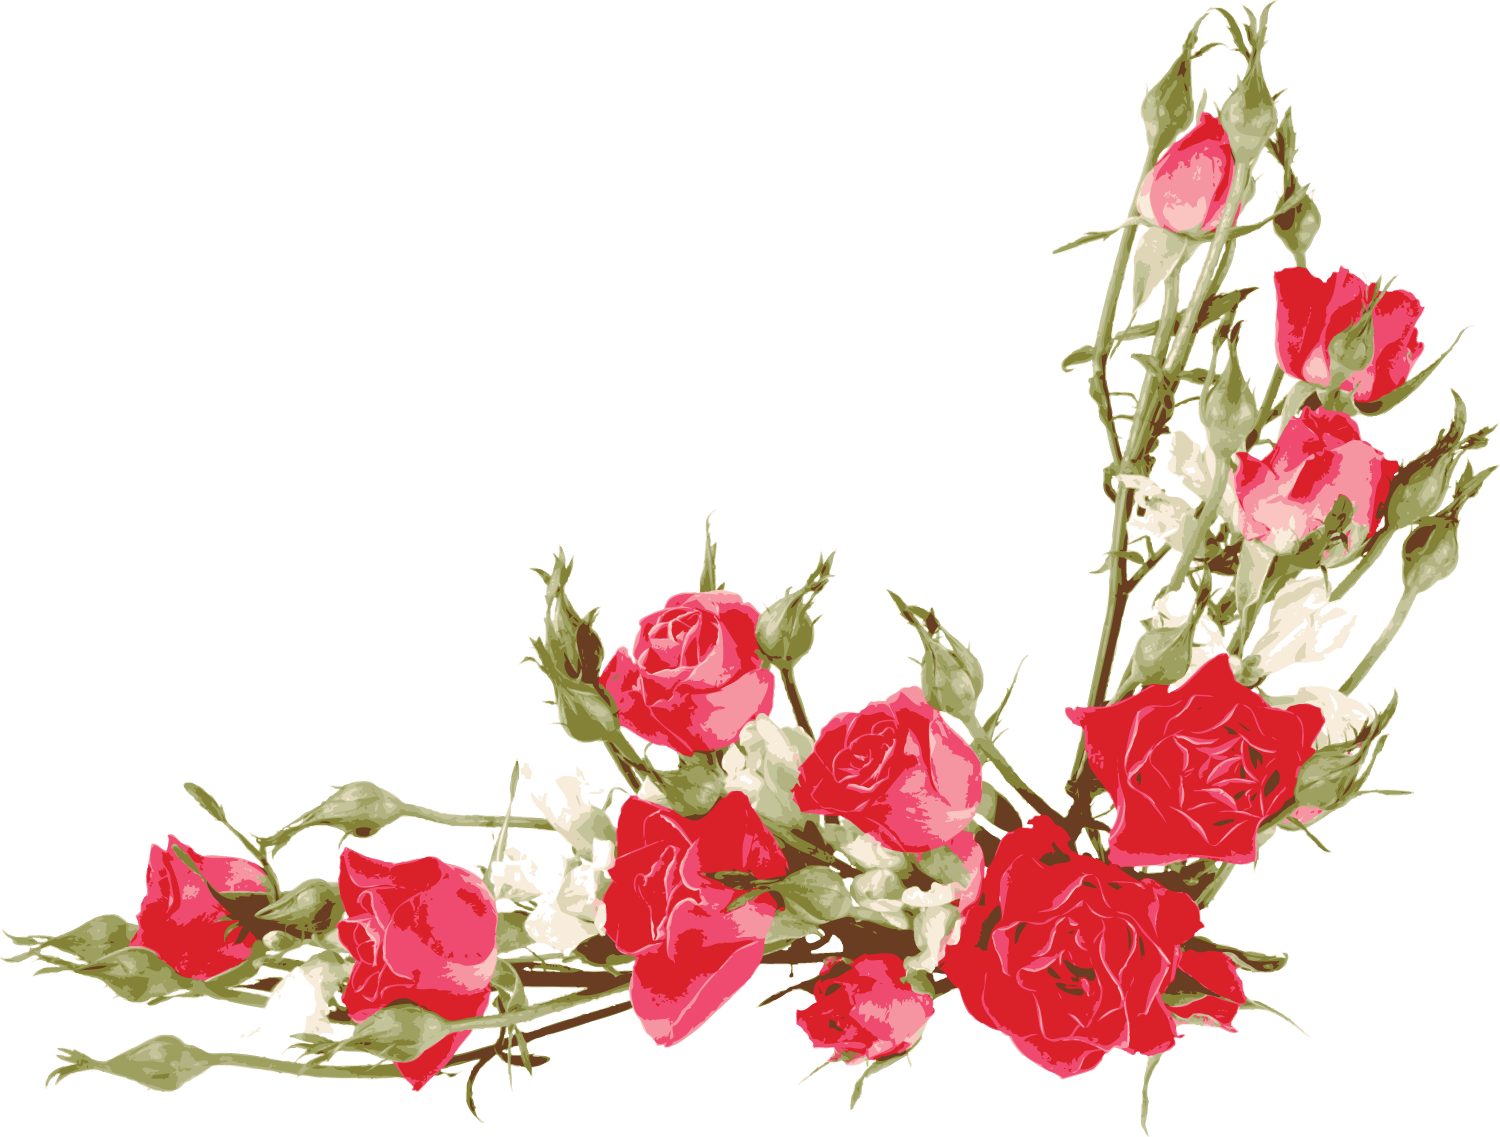 バラの画像 イラスト フリー素材 No 307 赤バラ つぼみ